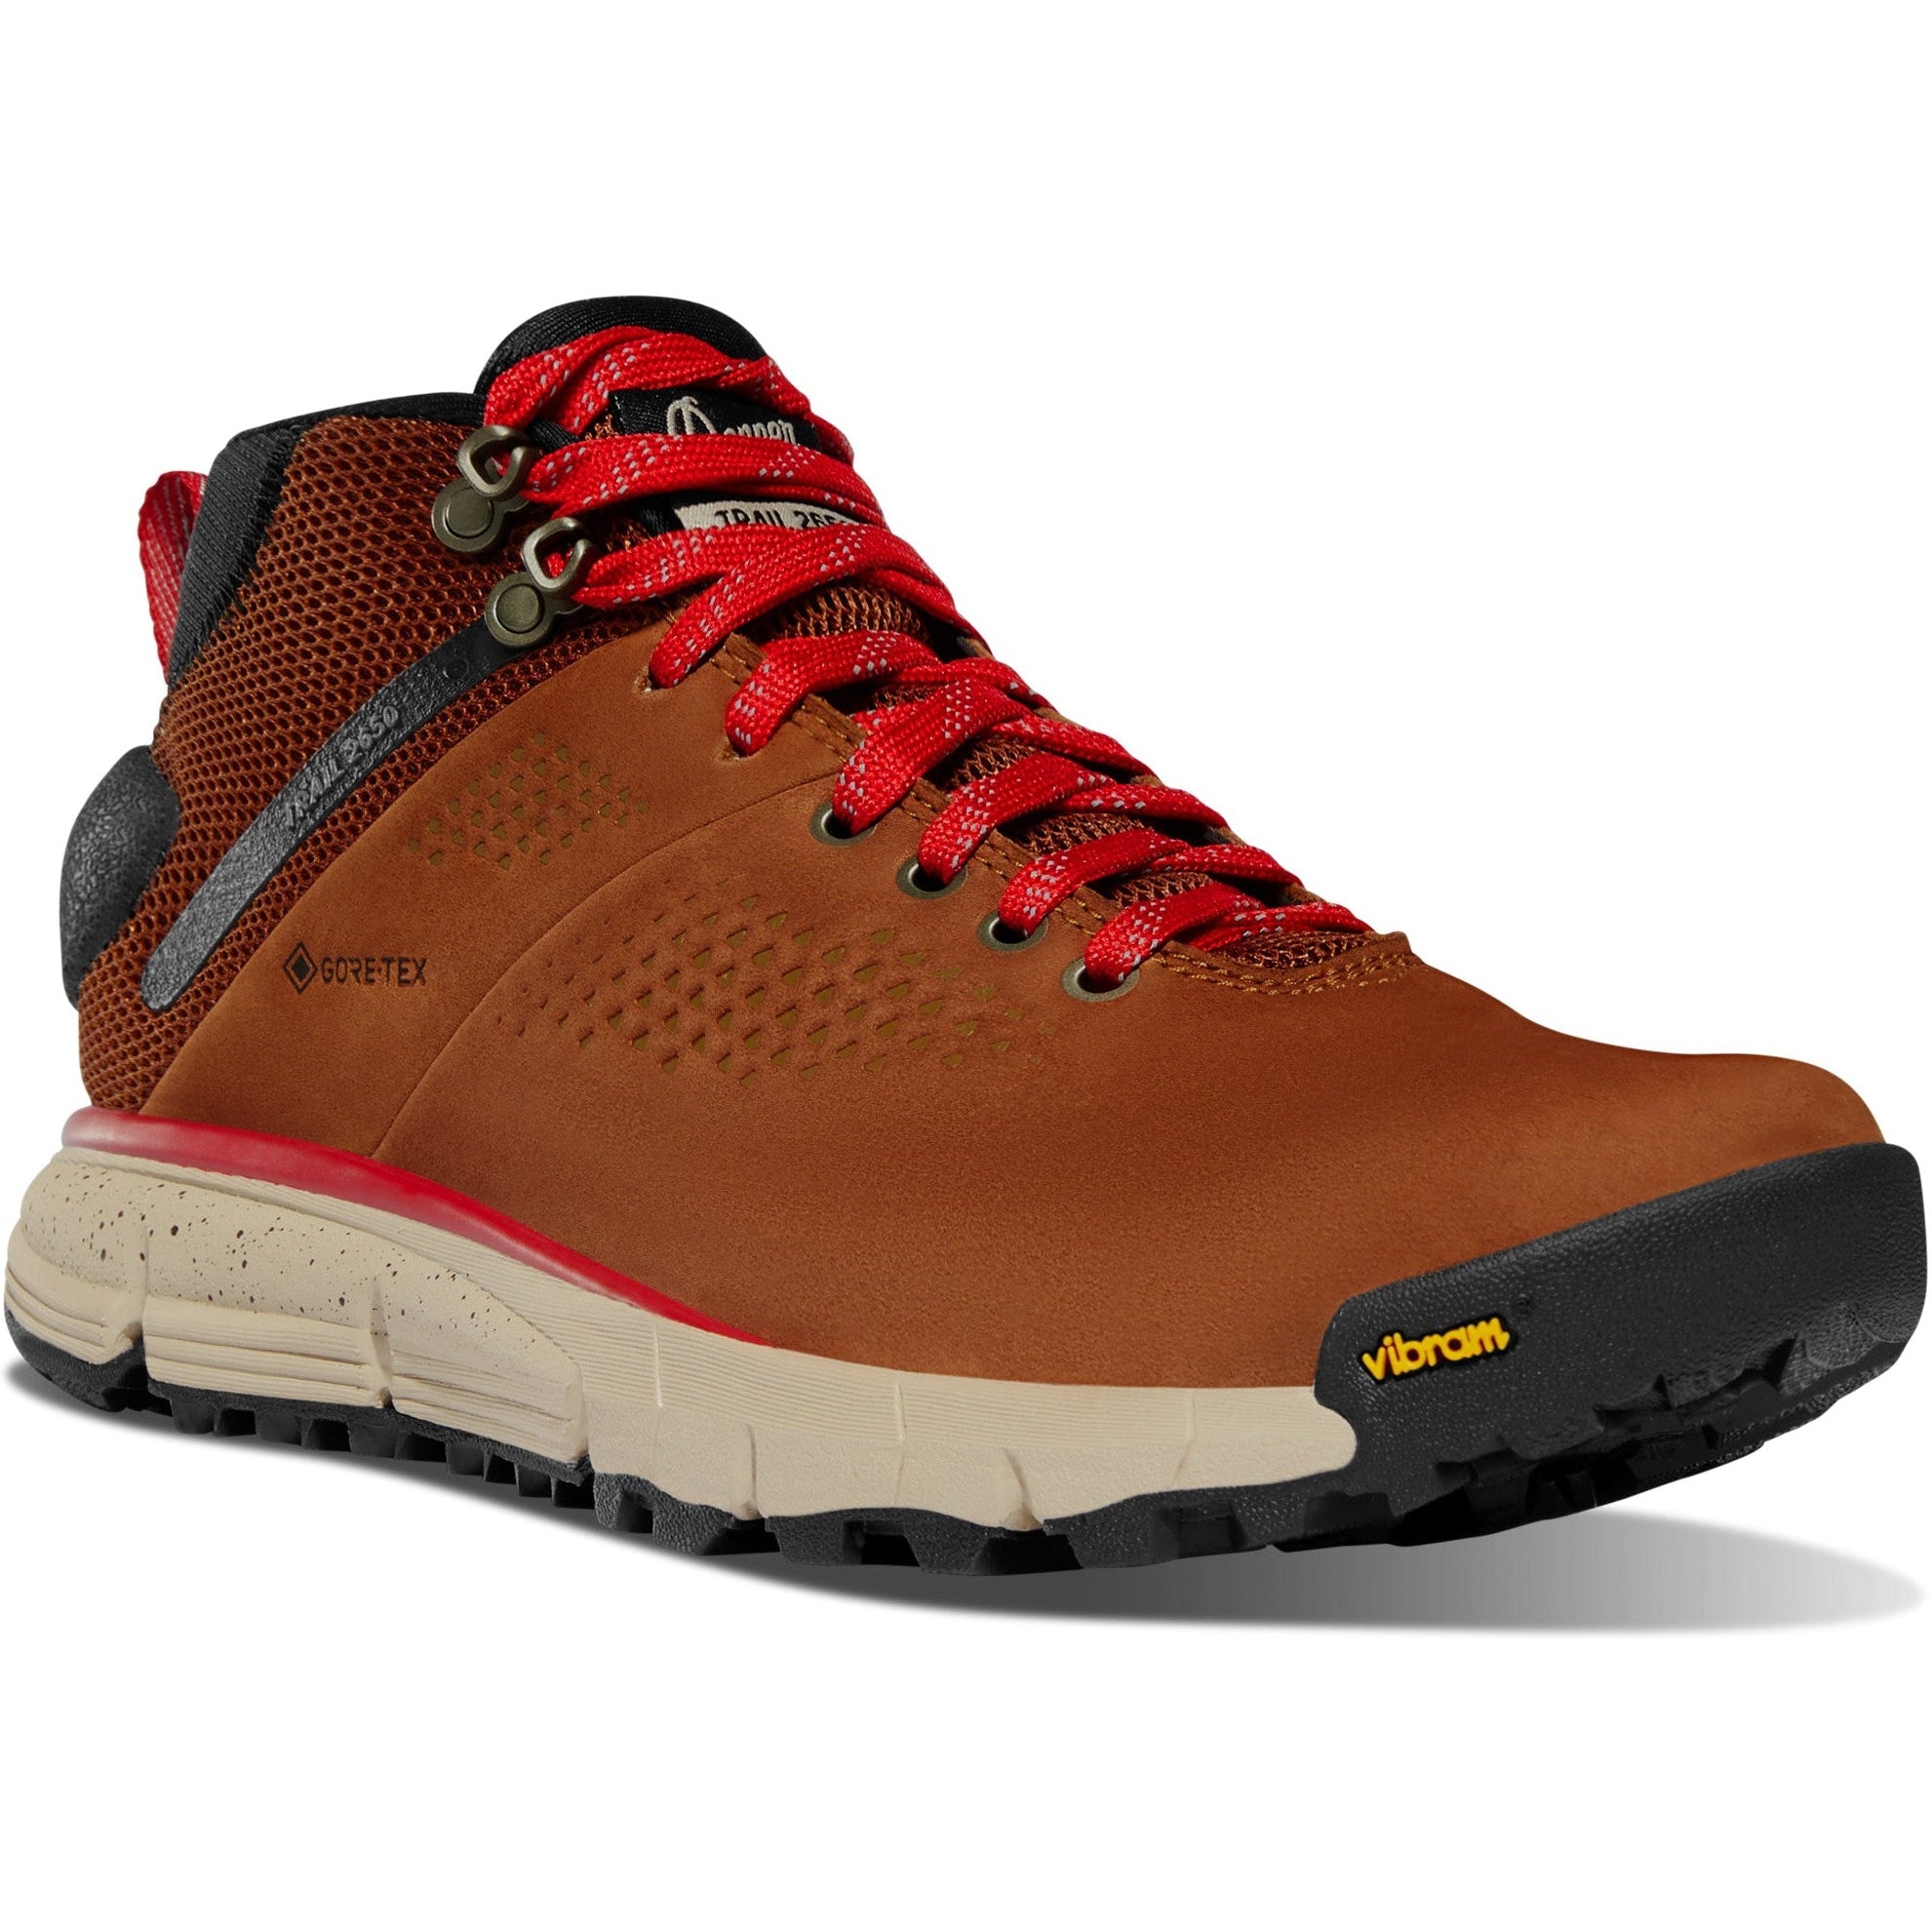 Danner Women's Trail 2650 Mid 4" WP Hiker Shoe - Brown - 61250 5 / Medium / Brown - Overlook Boots